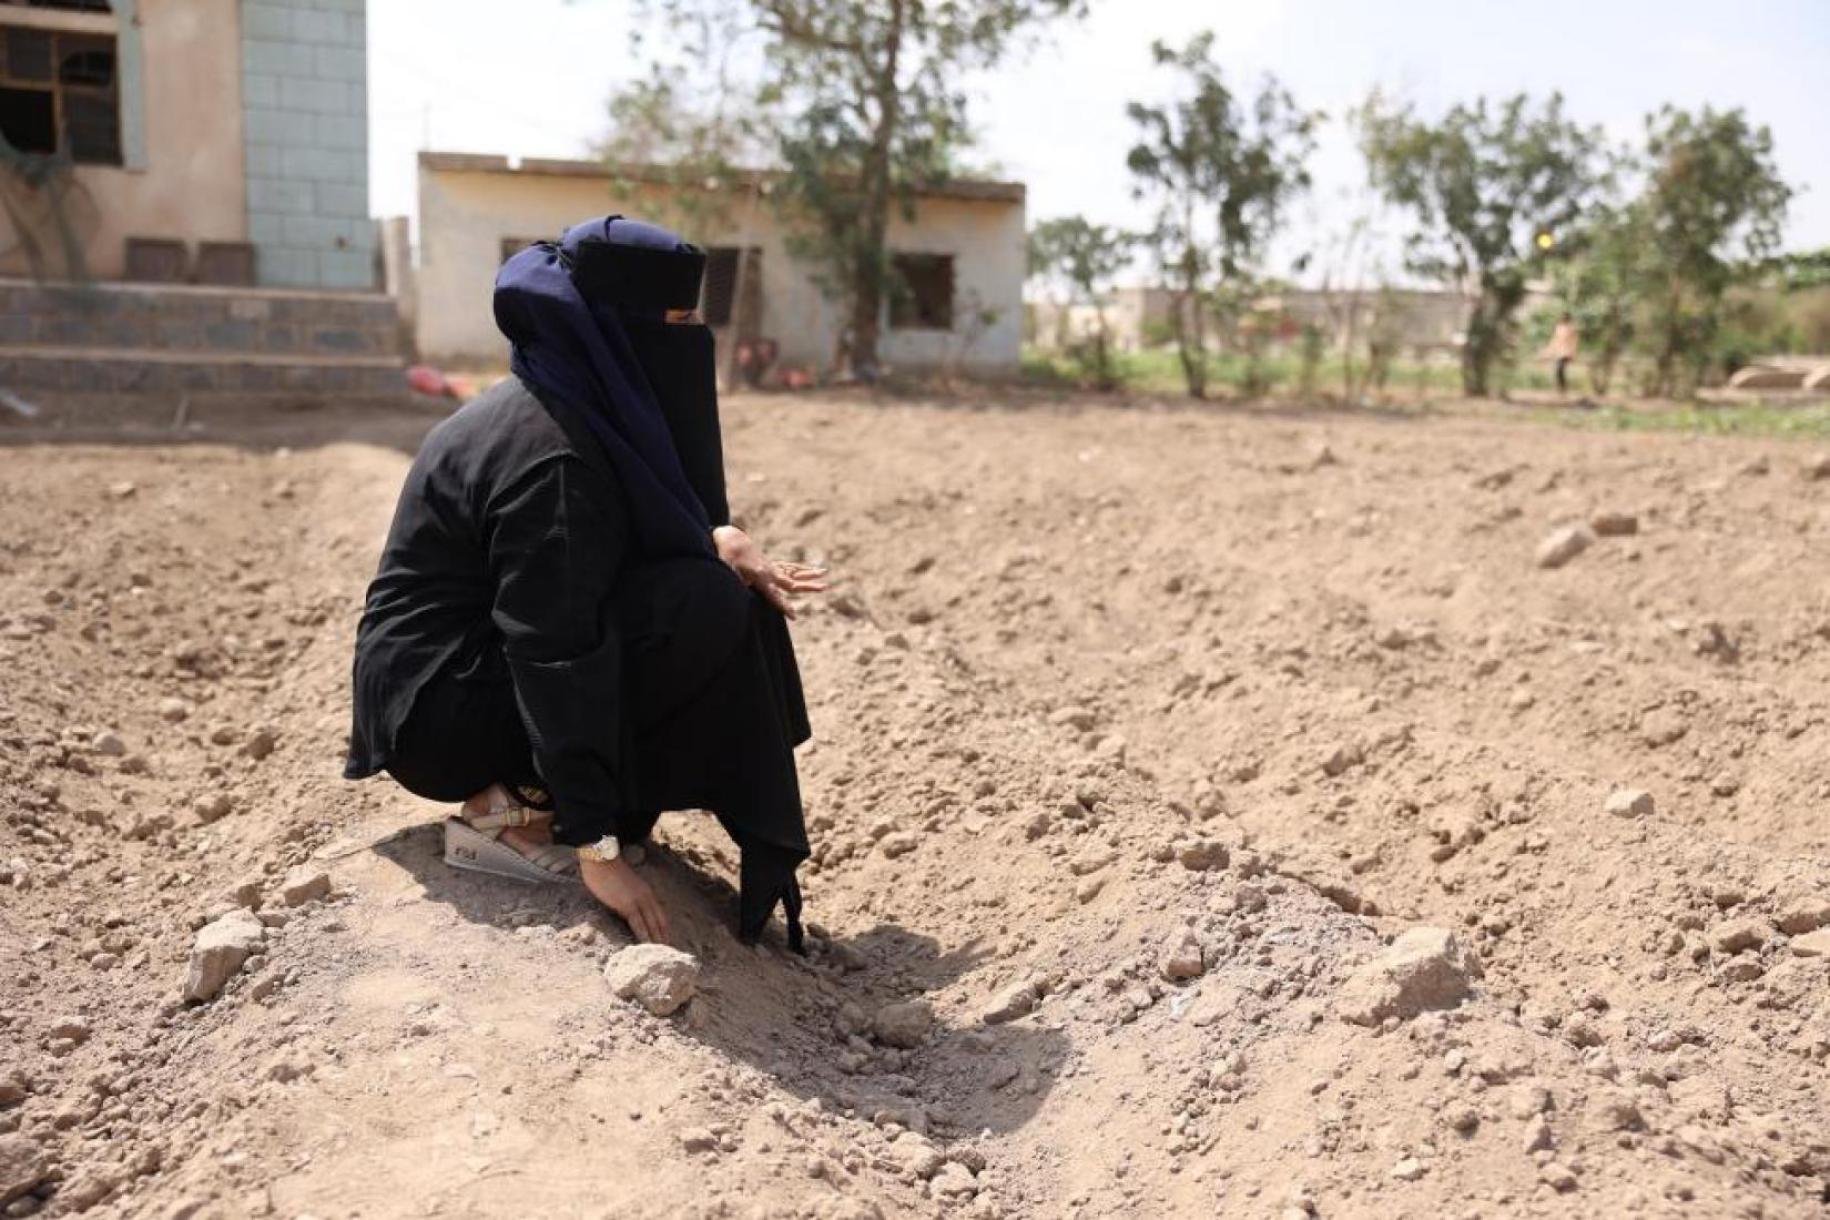 A Lahj, un des gouvernorats du Yémen, une femme entièrement voilée est accroupie au sol sur un terrain extrêmement sec devant des habitations modestes.